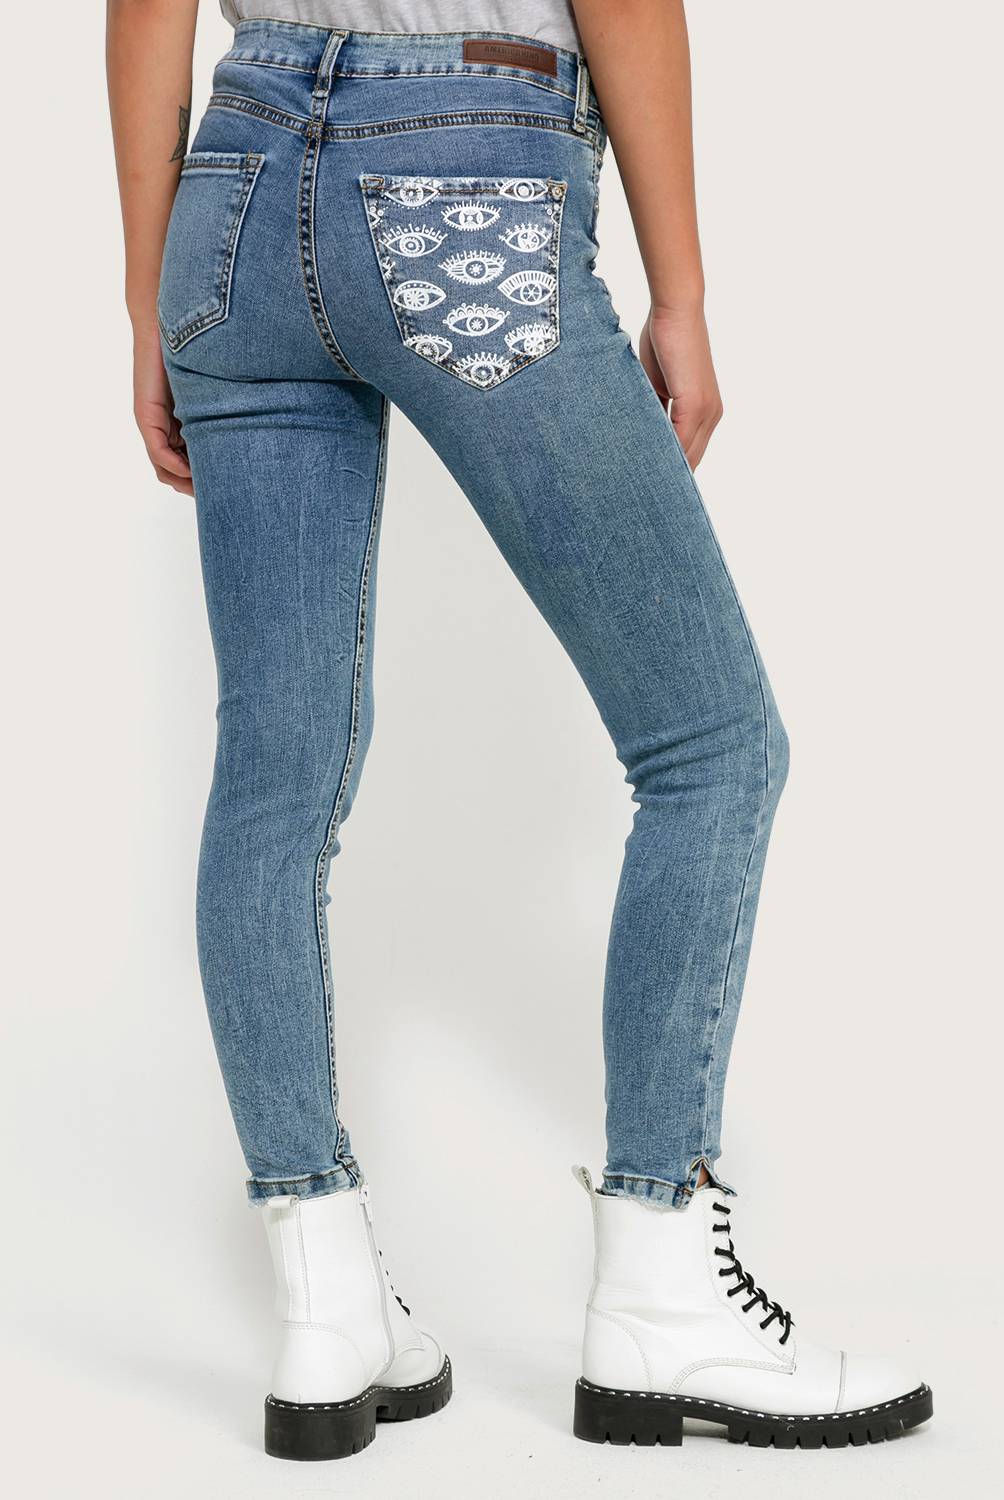 AMERICANINO - Jeans Mujer Bolsillo Estampado